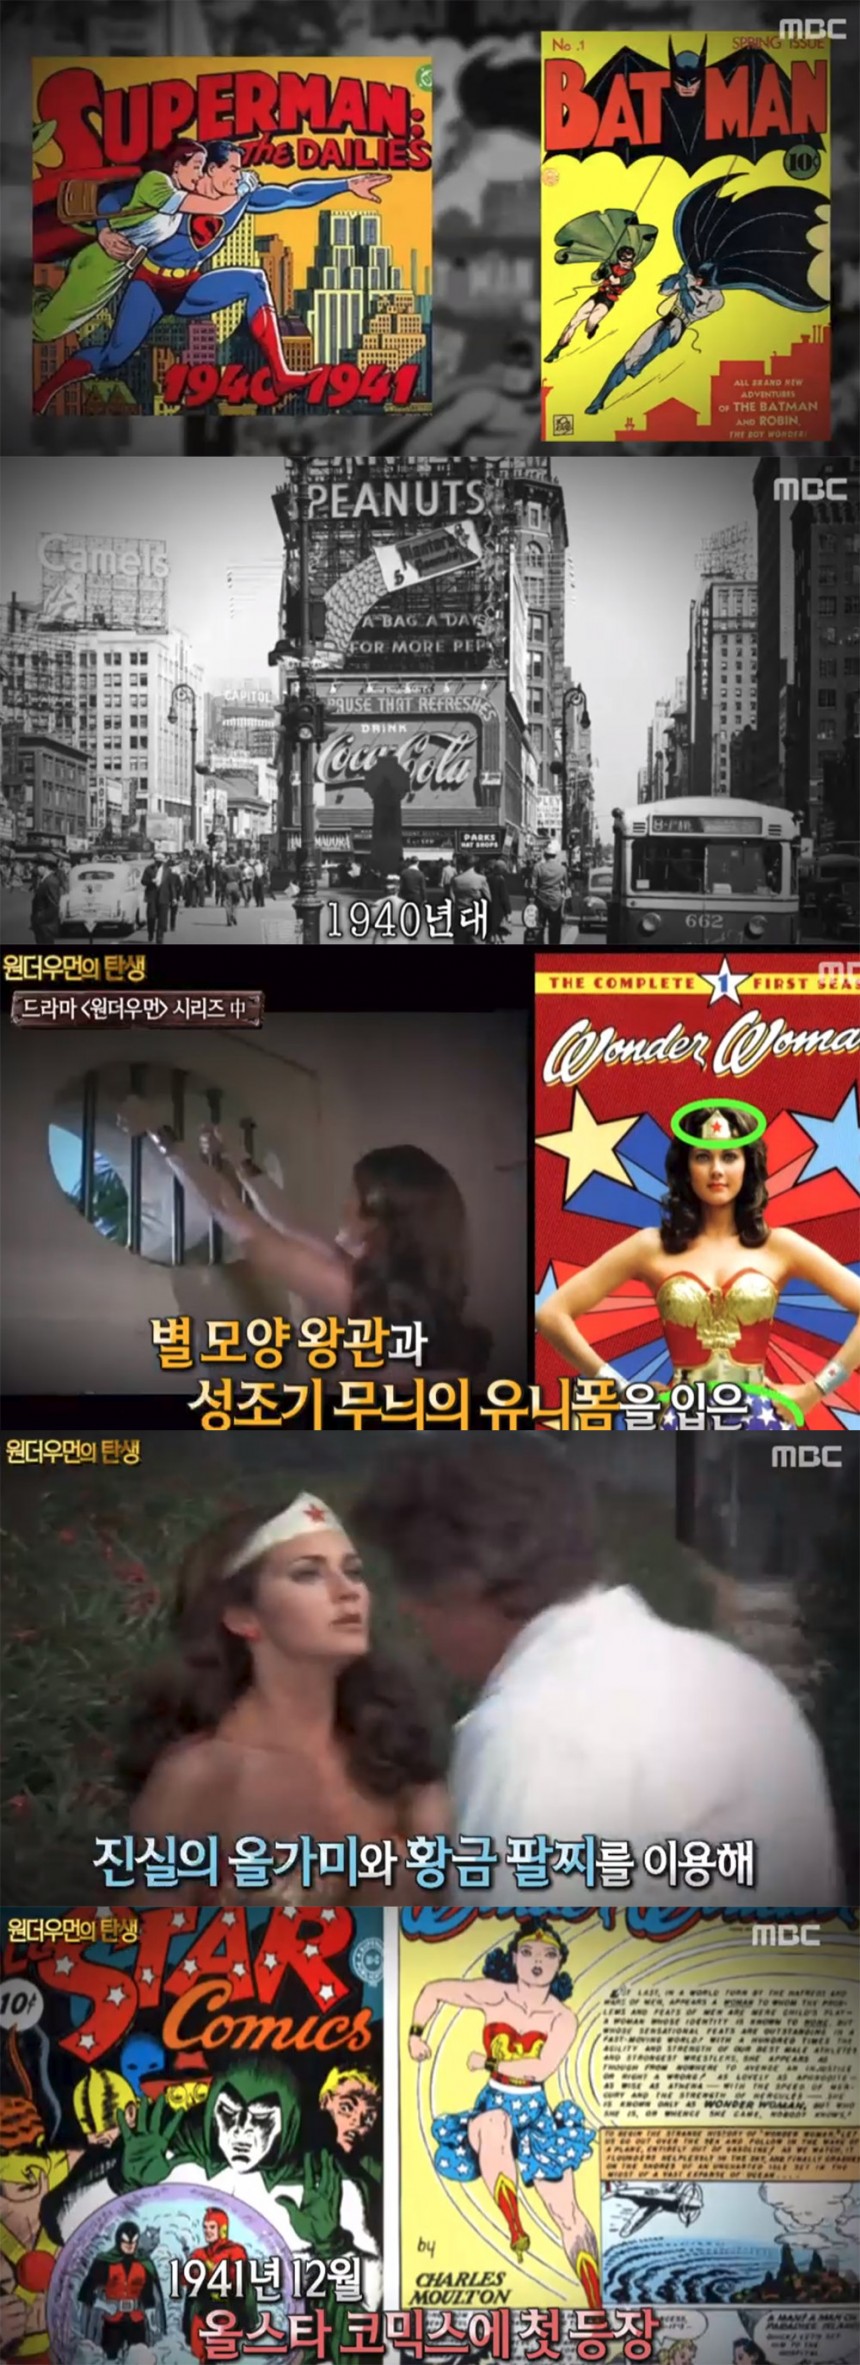 MBC ‘신비한TV – 서프라이즈’ 방송 캡처